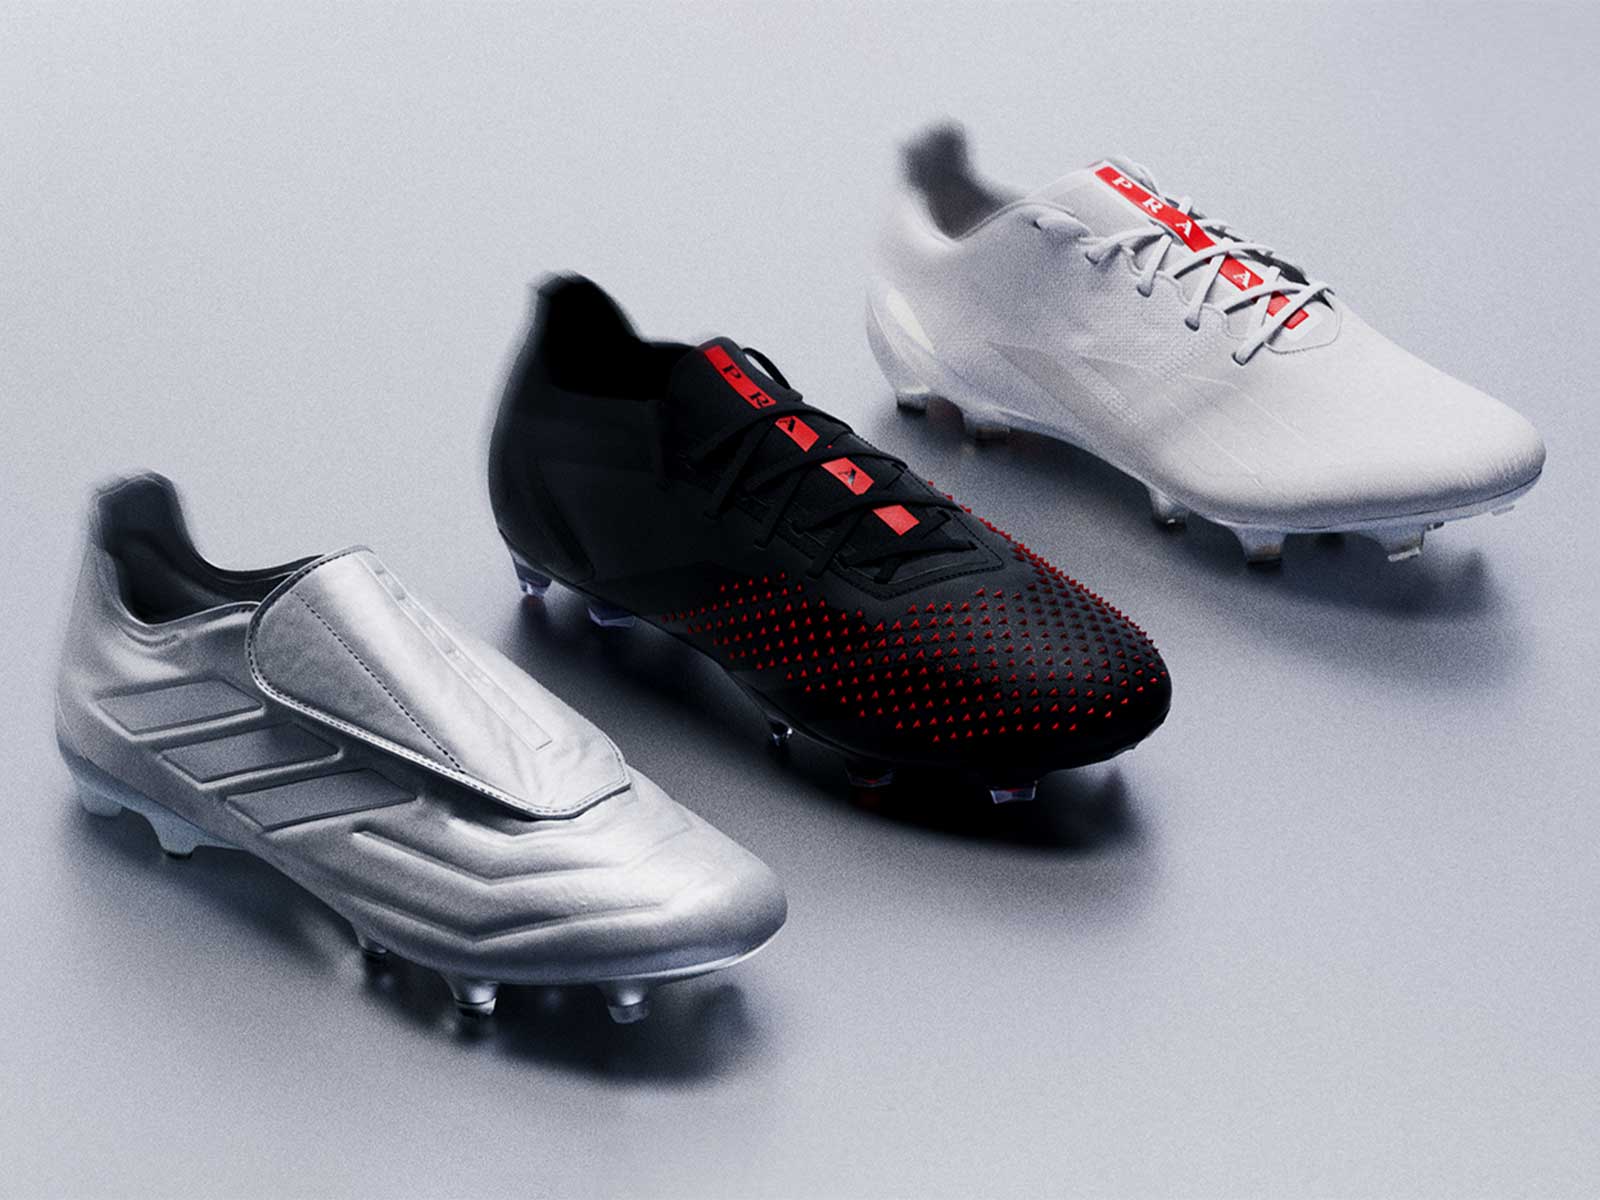 oler pintar pollo Football for Prada: Las primeras botas de fútbol de adidas y Prada -  HIGHXTAR.